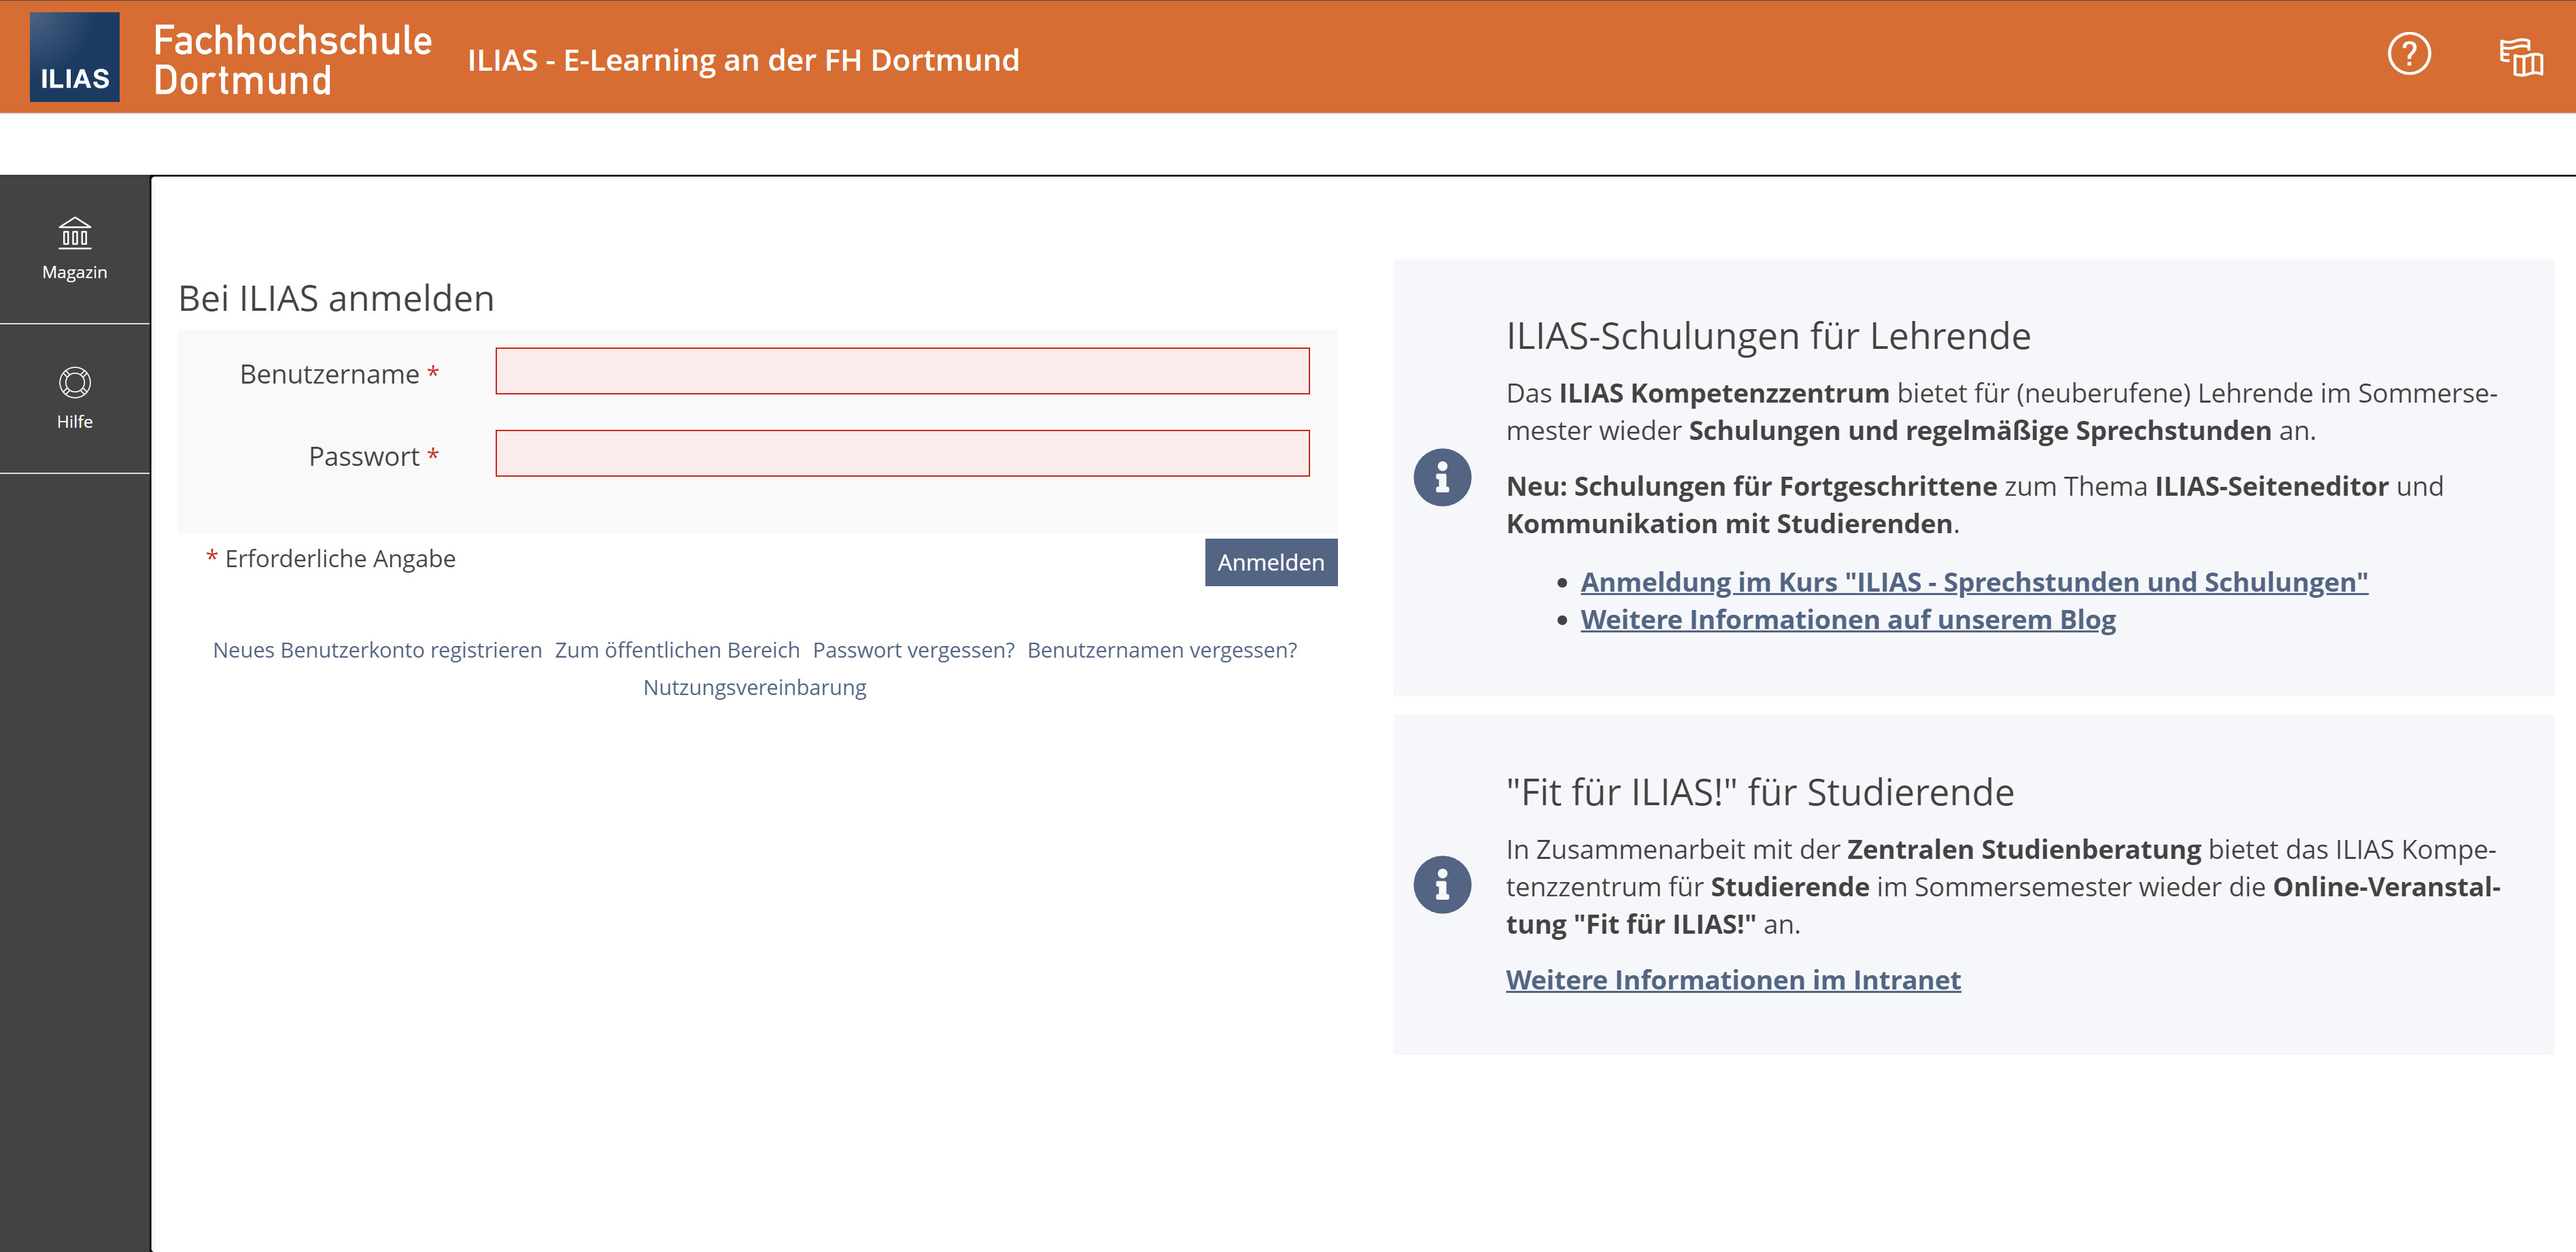 Screenshot Anmeldeseite von ILIAS an der FH Dortmund, links Formular zur Anmeldung, rechts Hinweise zu ILIAS-Schulung